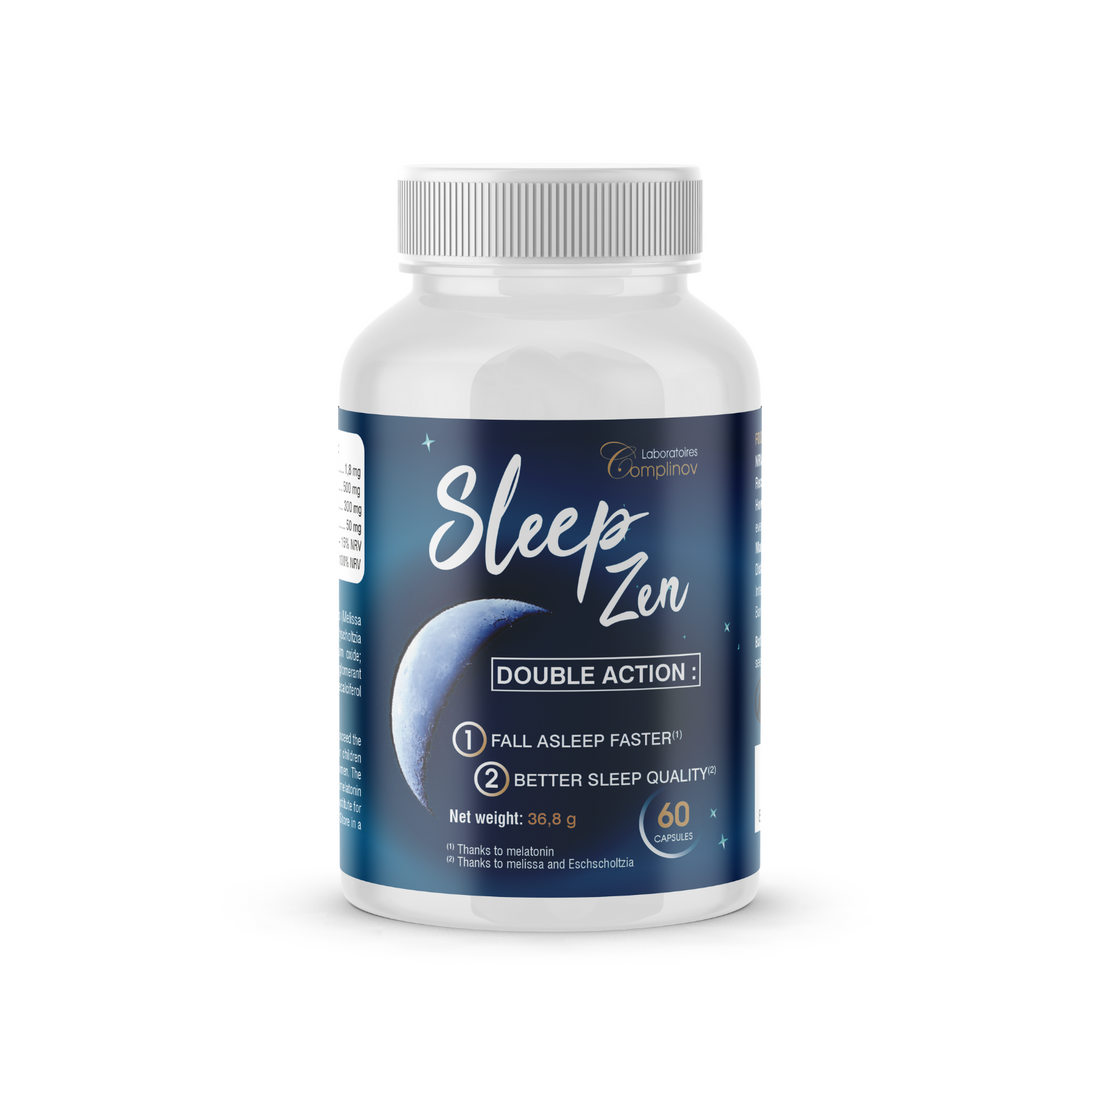 SLEEP ZEN™ - Sleep longer and better